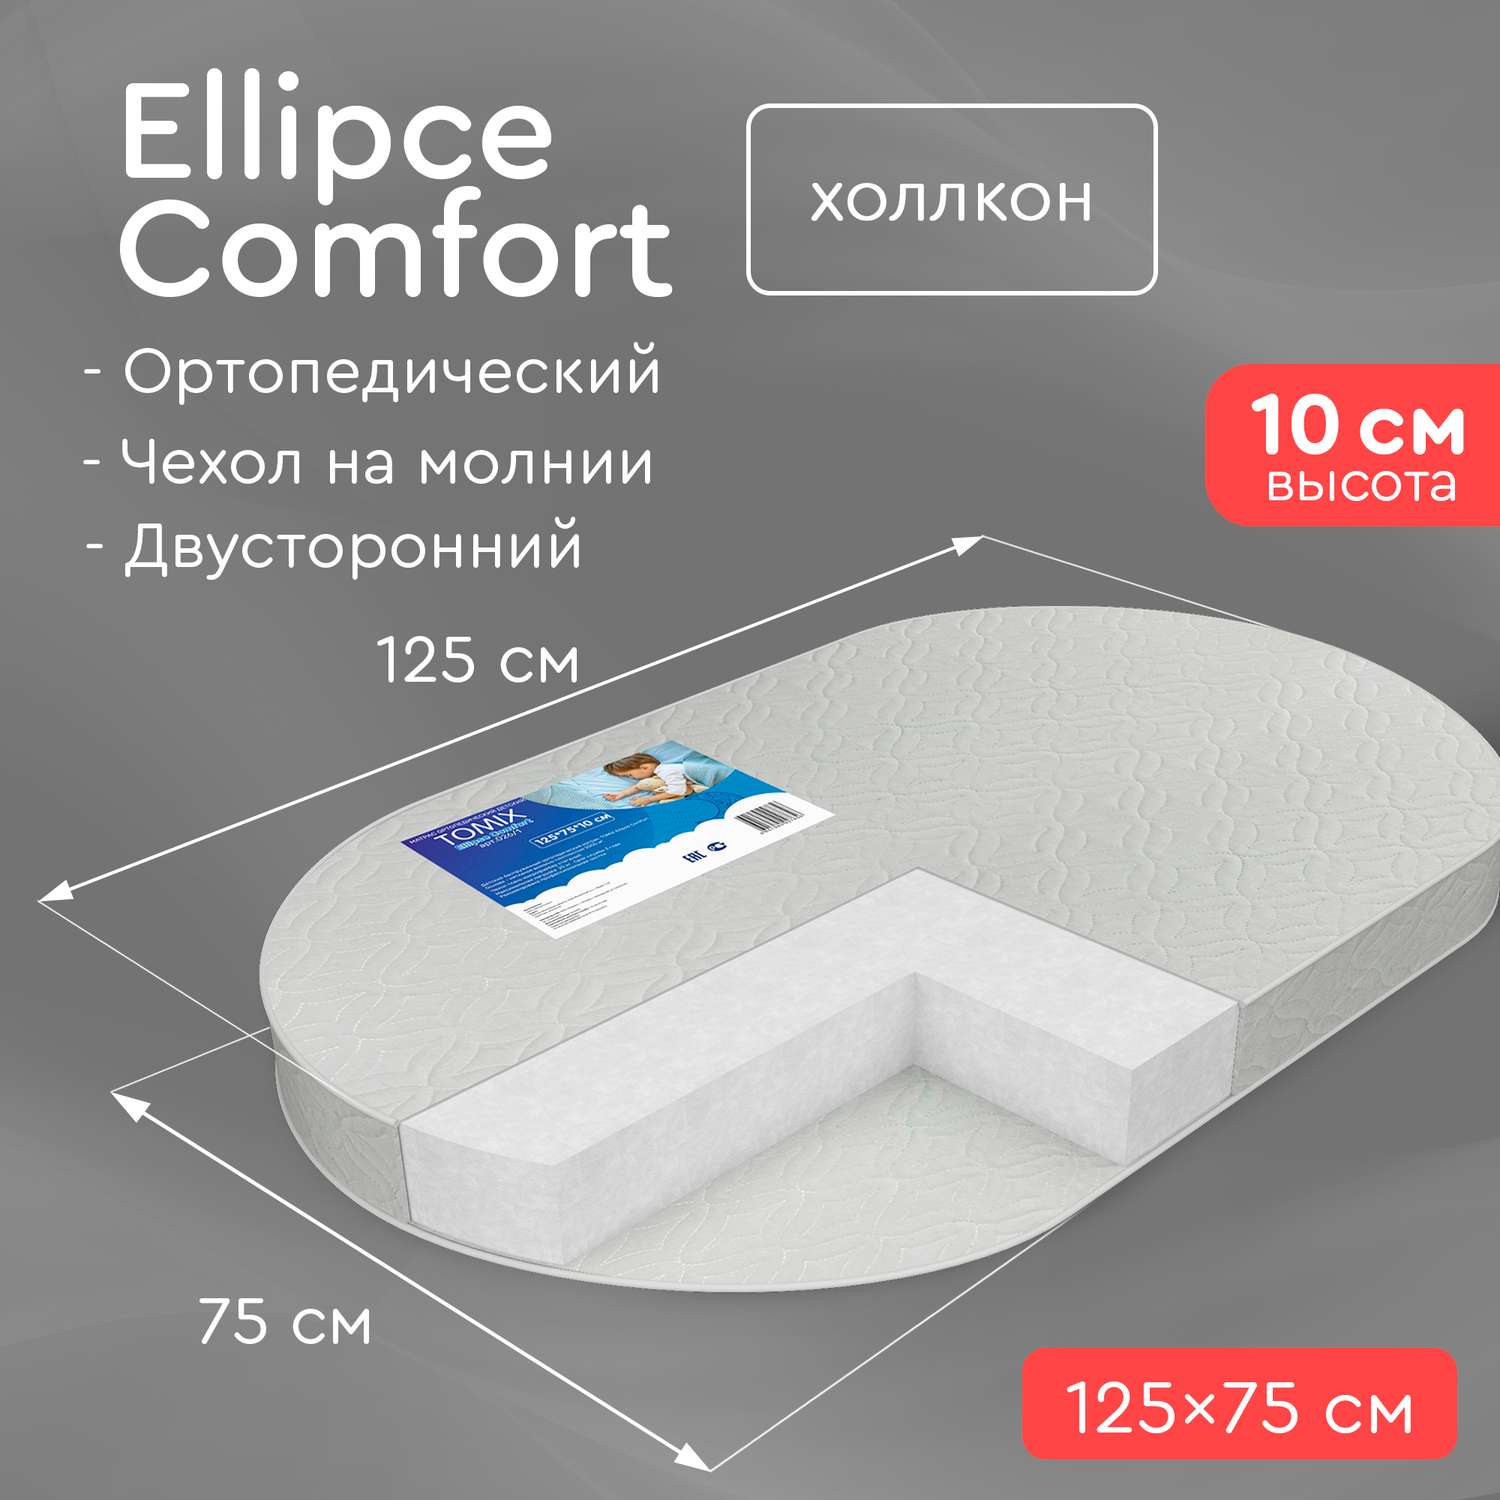 Овальный матрас в кроватку Tomix Ellipse Comfort 125*75 см - фото 2